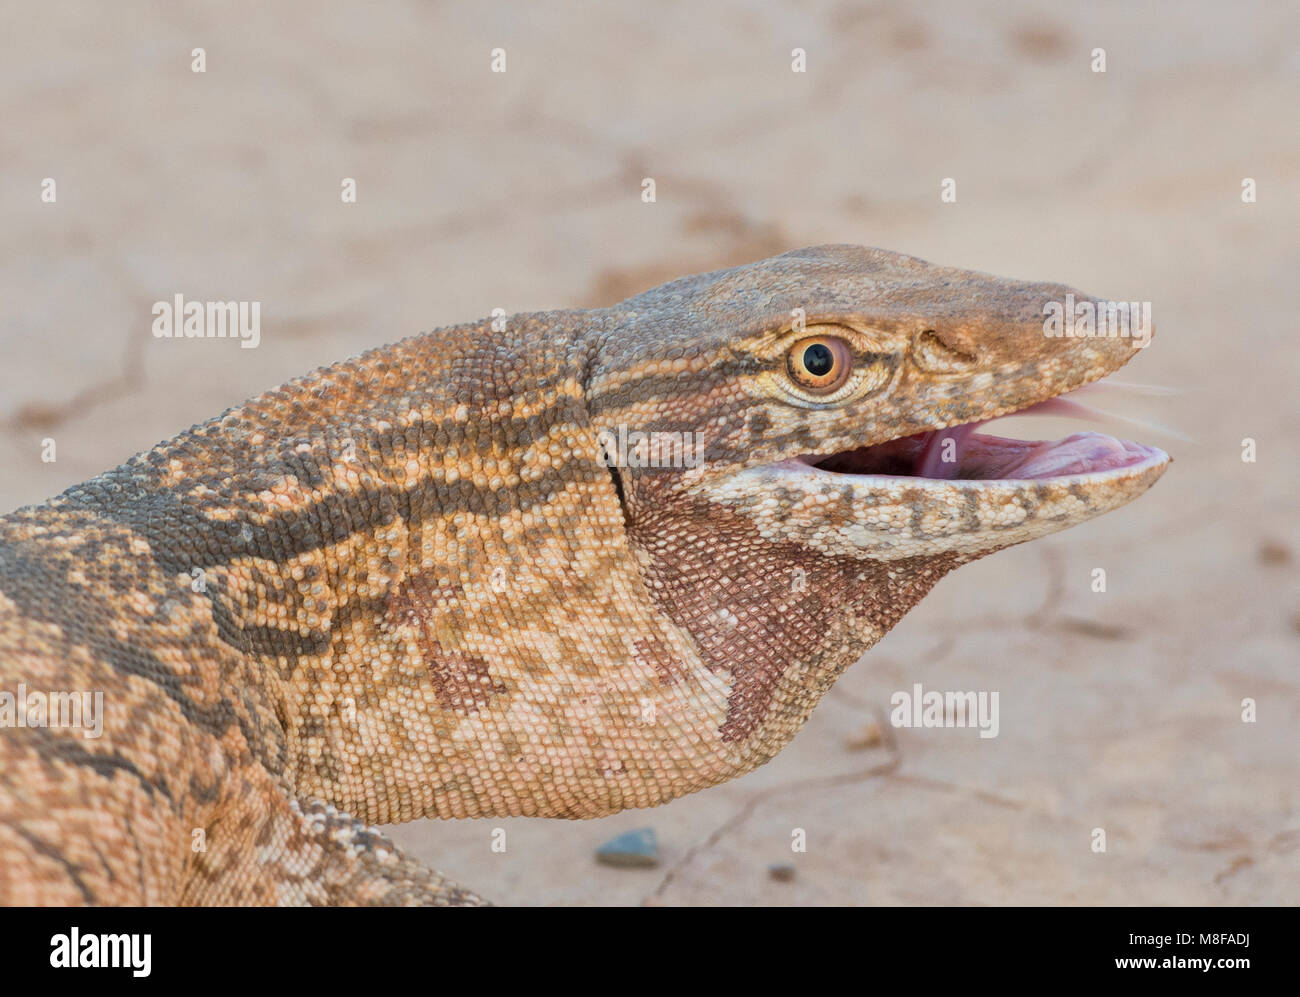 Rare Desert Monitor Lizard (Varanus griseus griseus) in the Moroccan Desert of North Africa. Stock Photo